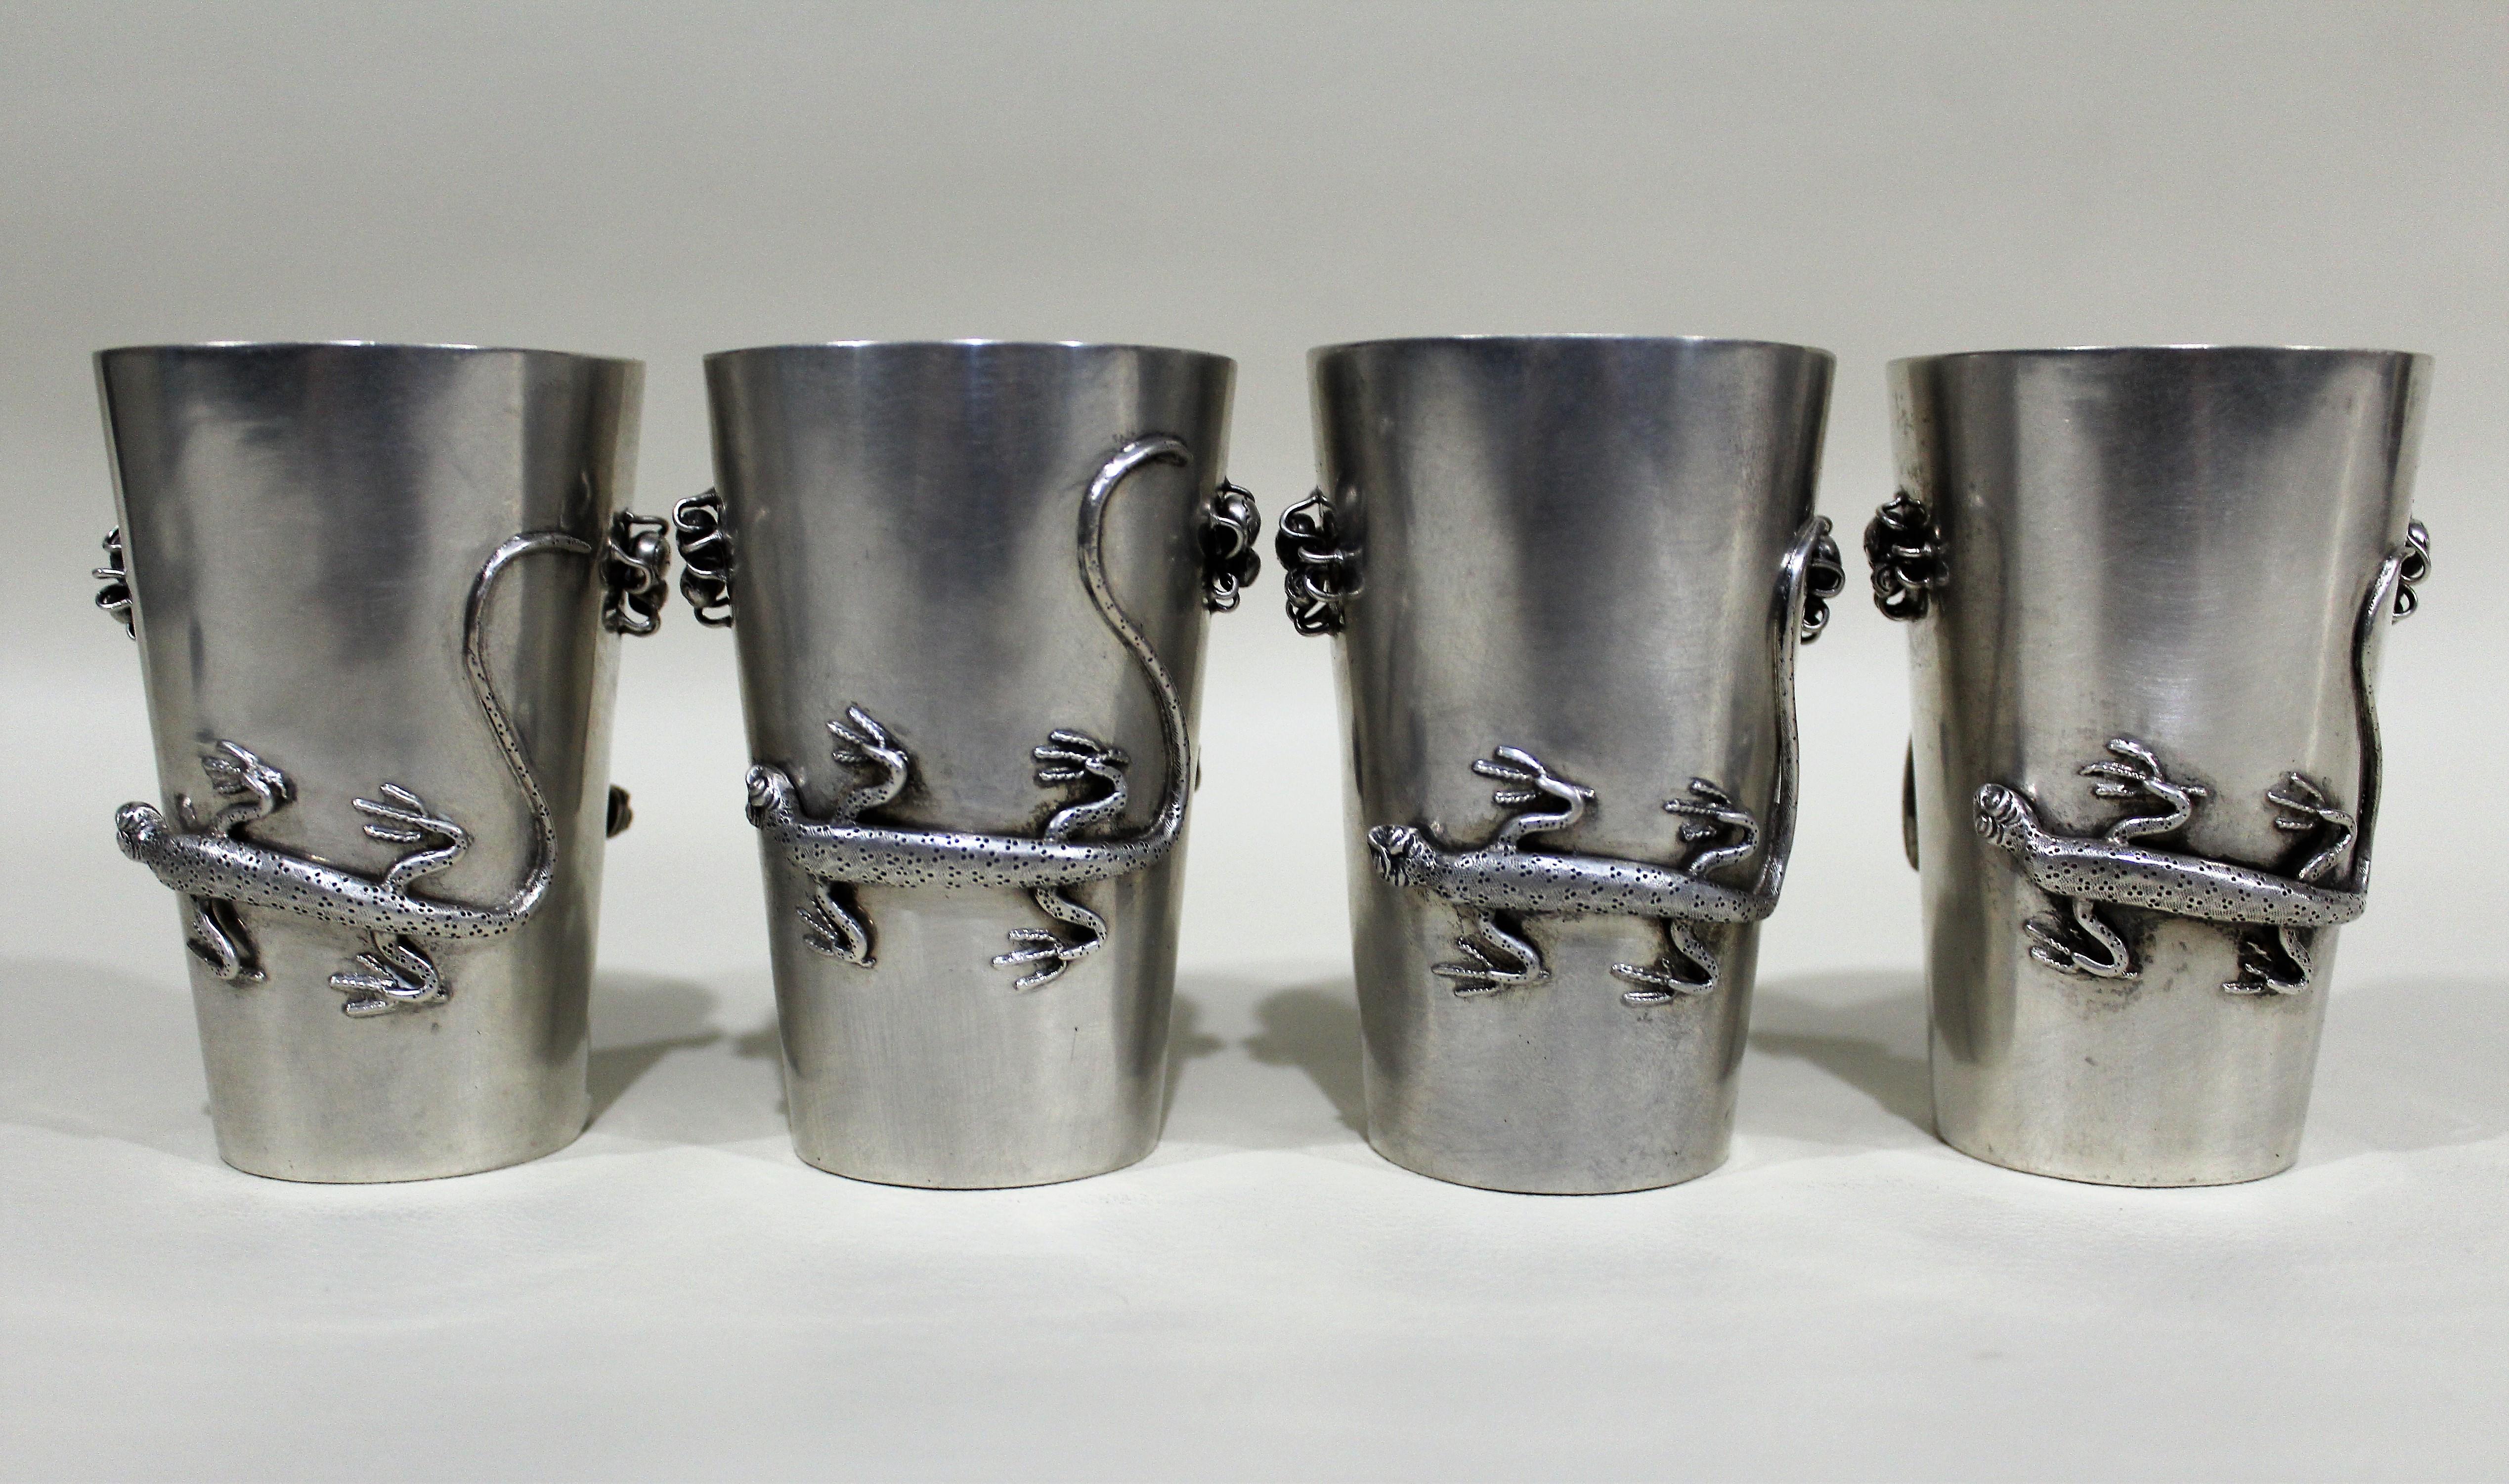 Ensemble de quatre gobelets ou tasses à boire en argent sterling, fabriqués par la Hung Chong Co. de Shanghai, avec des salamandres et des araignées décoratives appliquées en détail sur les côtés alternés de chaque tasse. Les gobelets sont